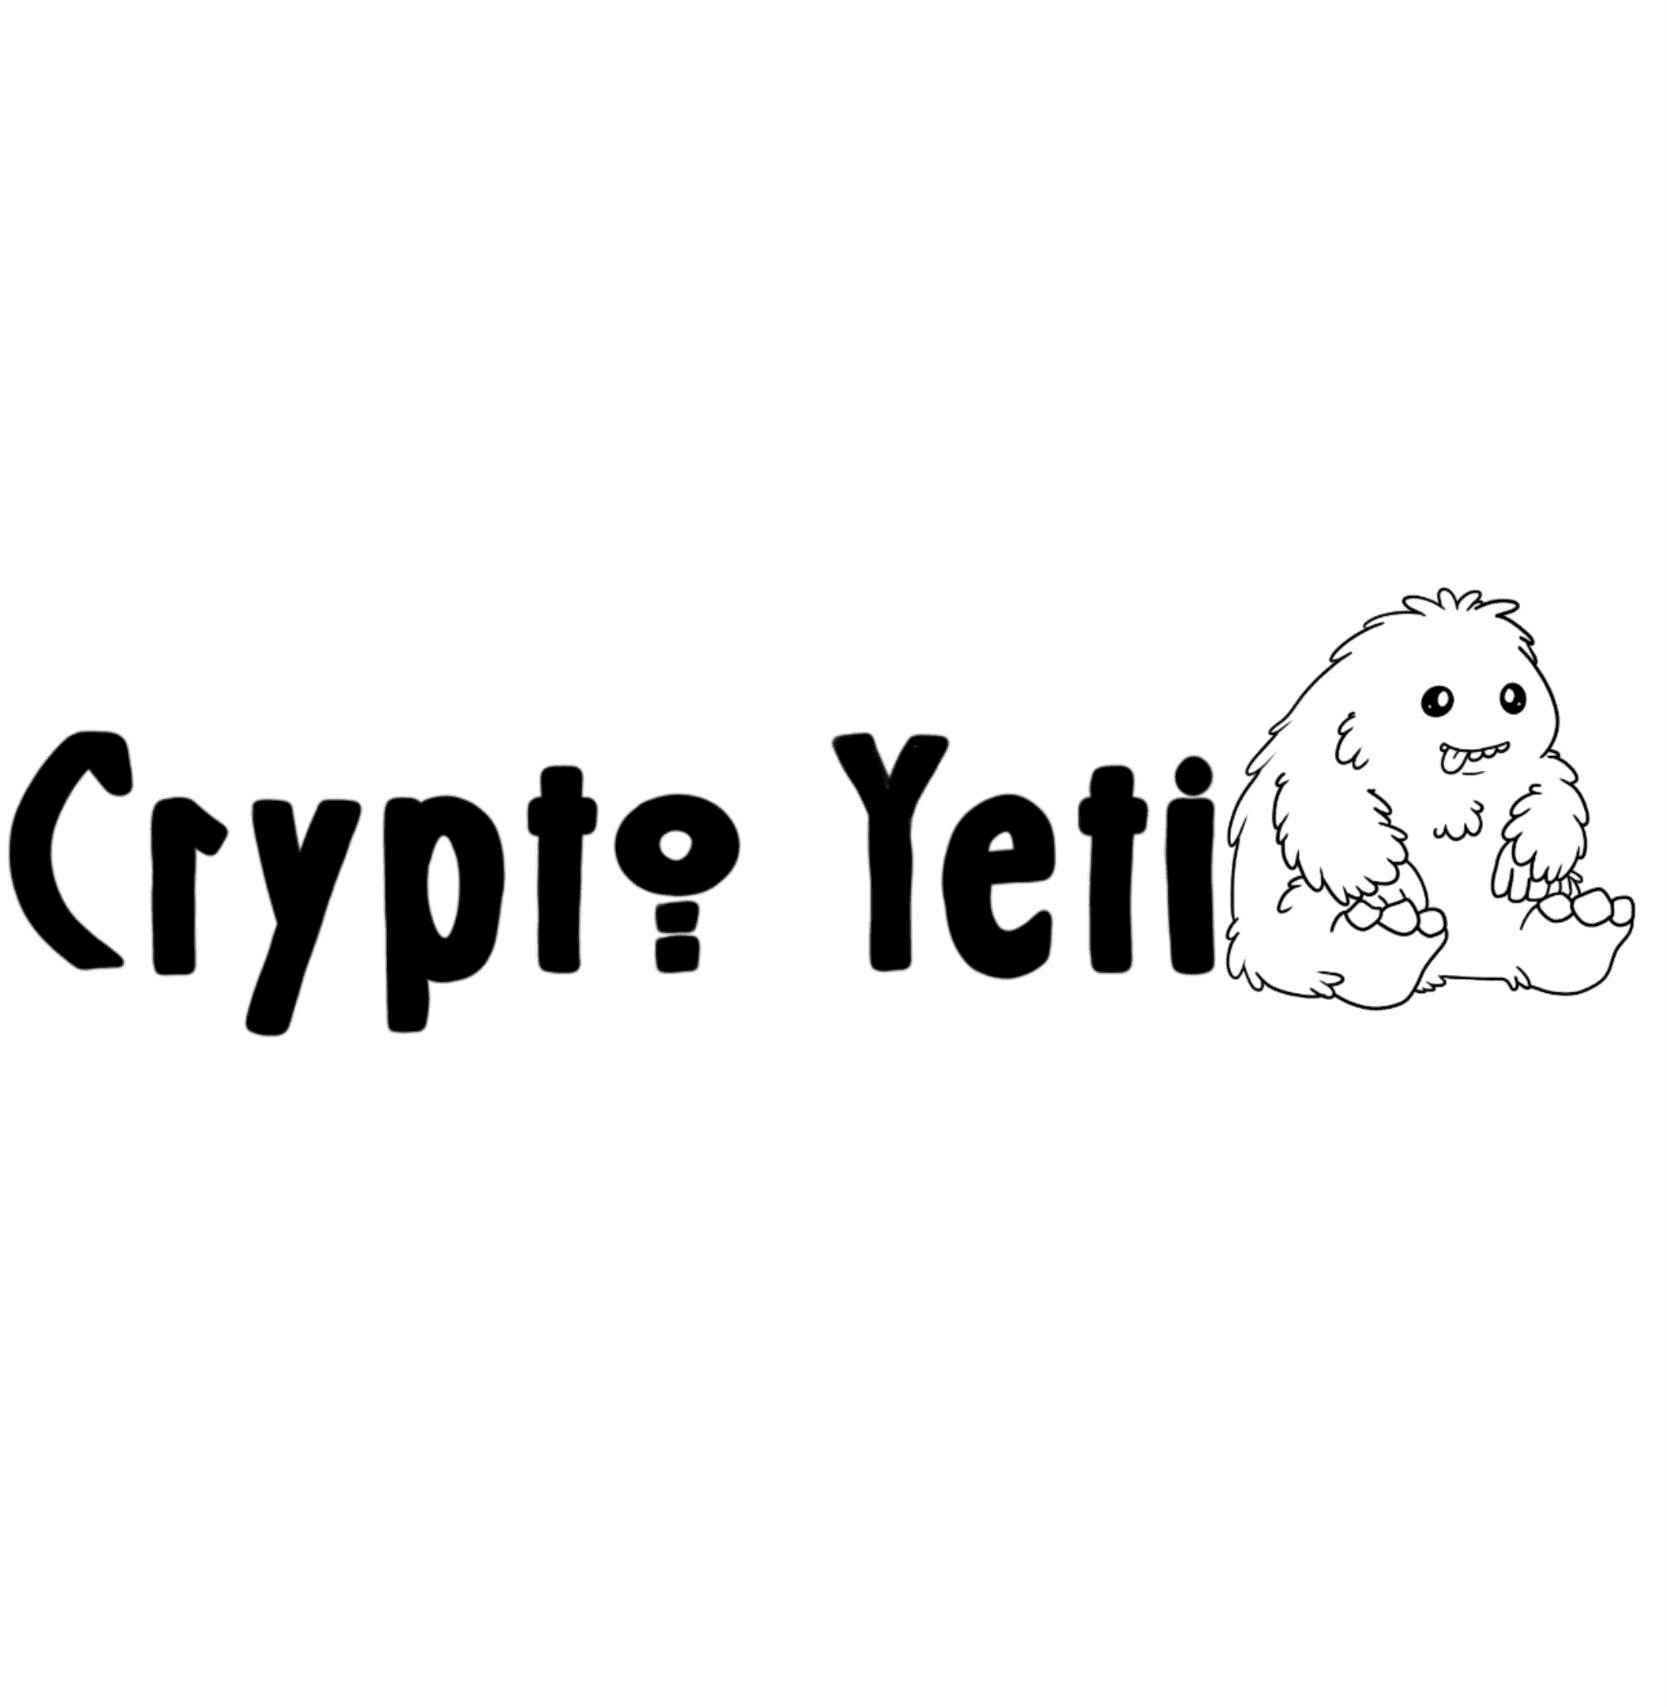 Crypto_Yeti1 banner